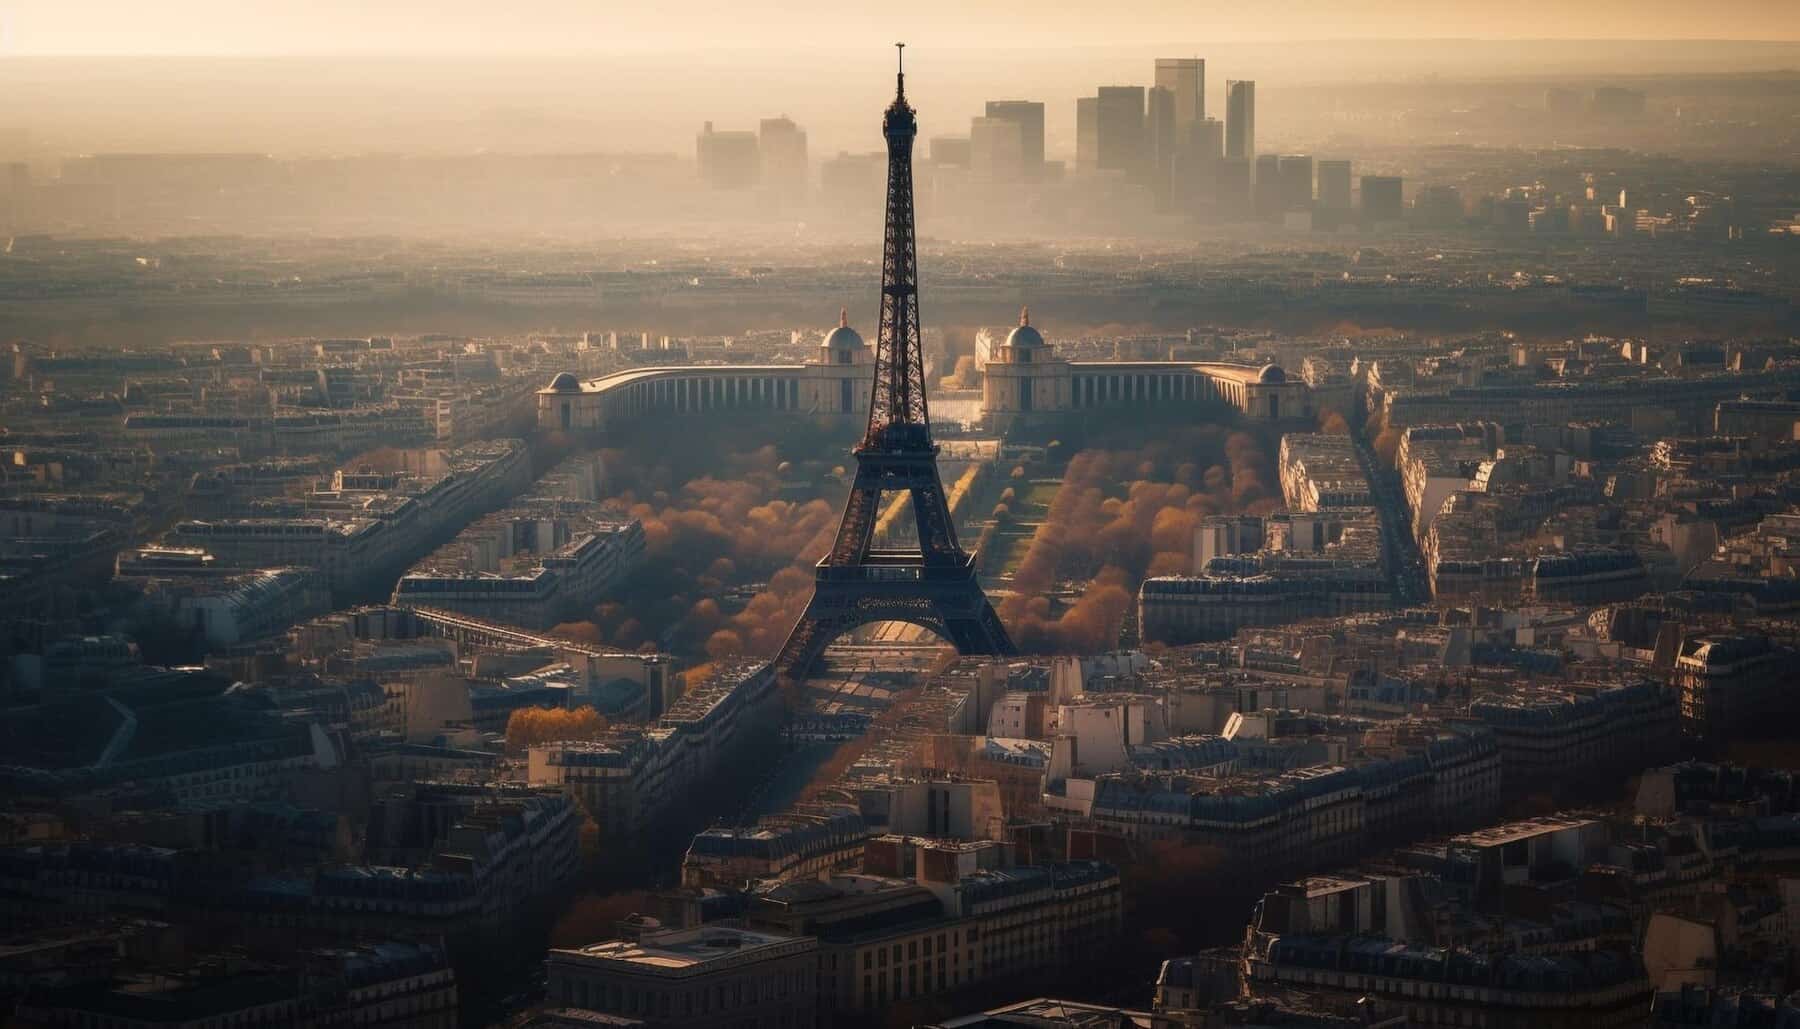 Jak zwiedzać Paryż: Poza zwykłym, z klasą i stylem